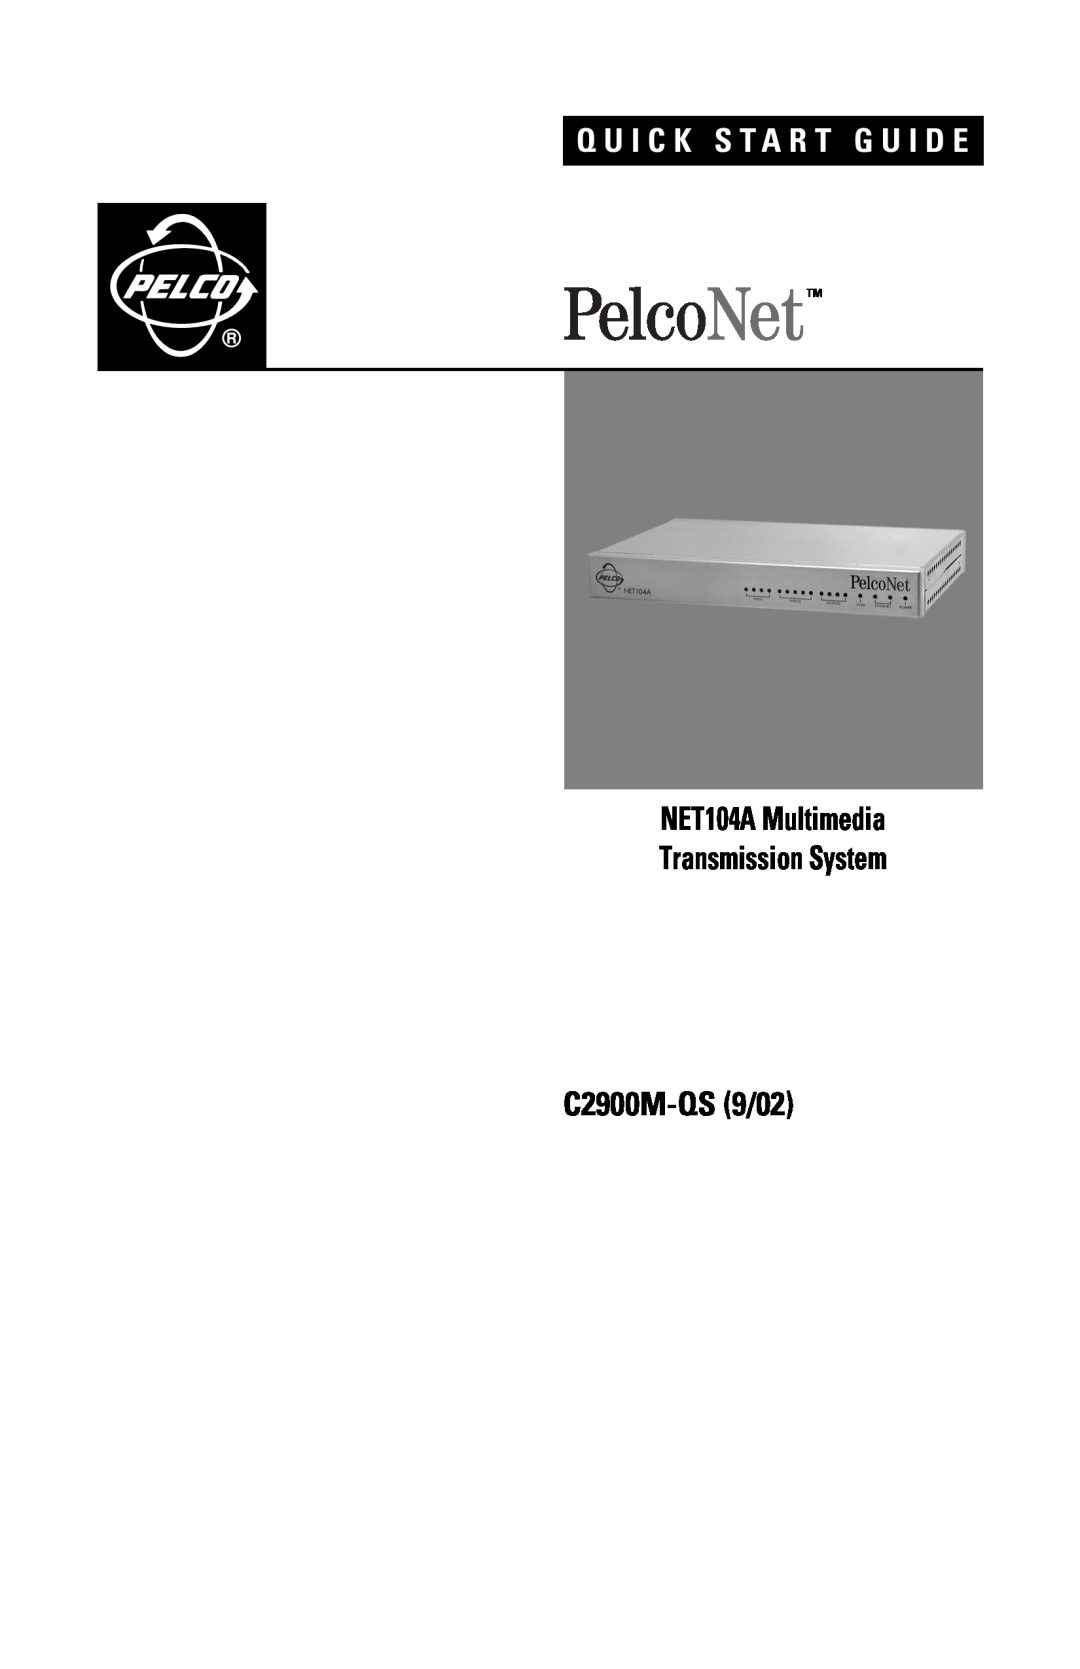 Pelco quick start NET104A Multimedia Transmission System, C2900M-QS9/02, Q U I C K S T A R T G U I D E 